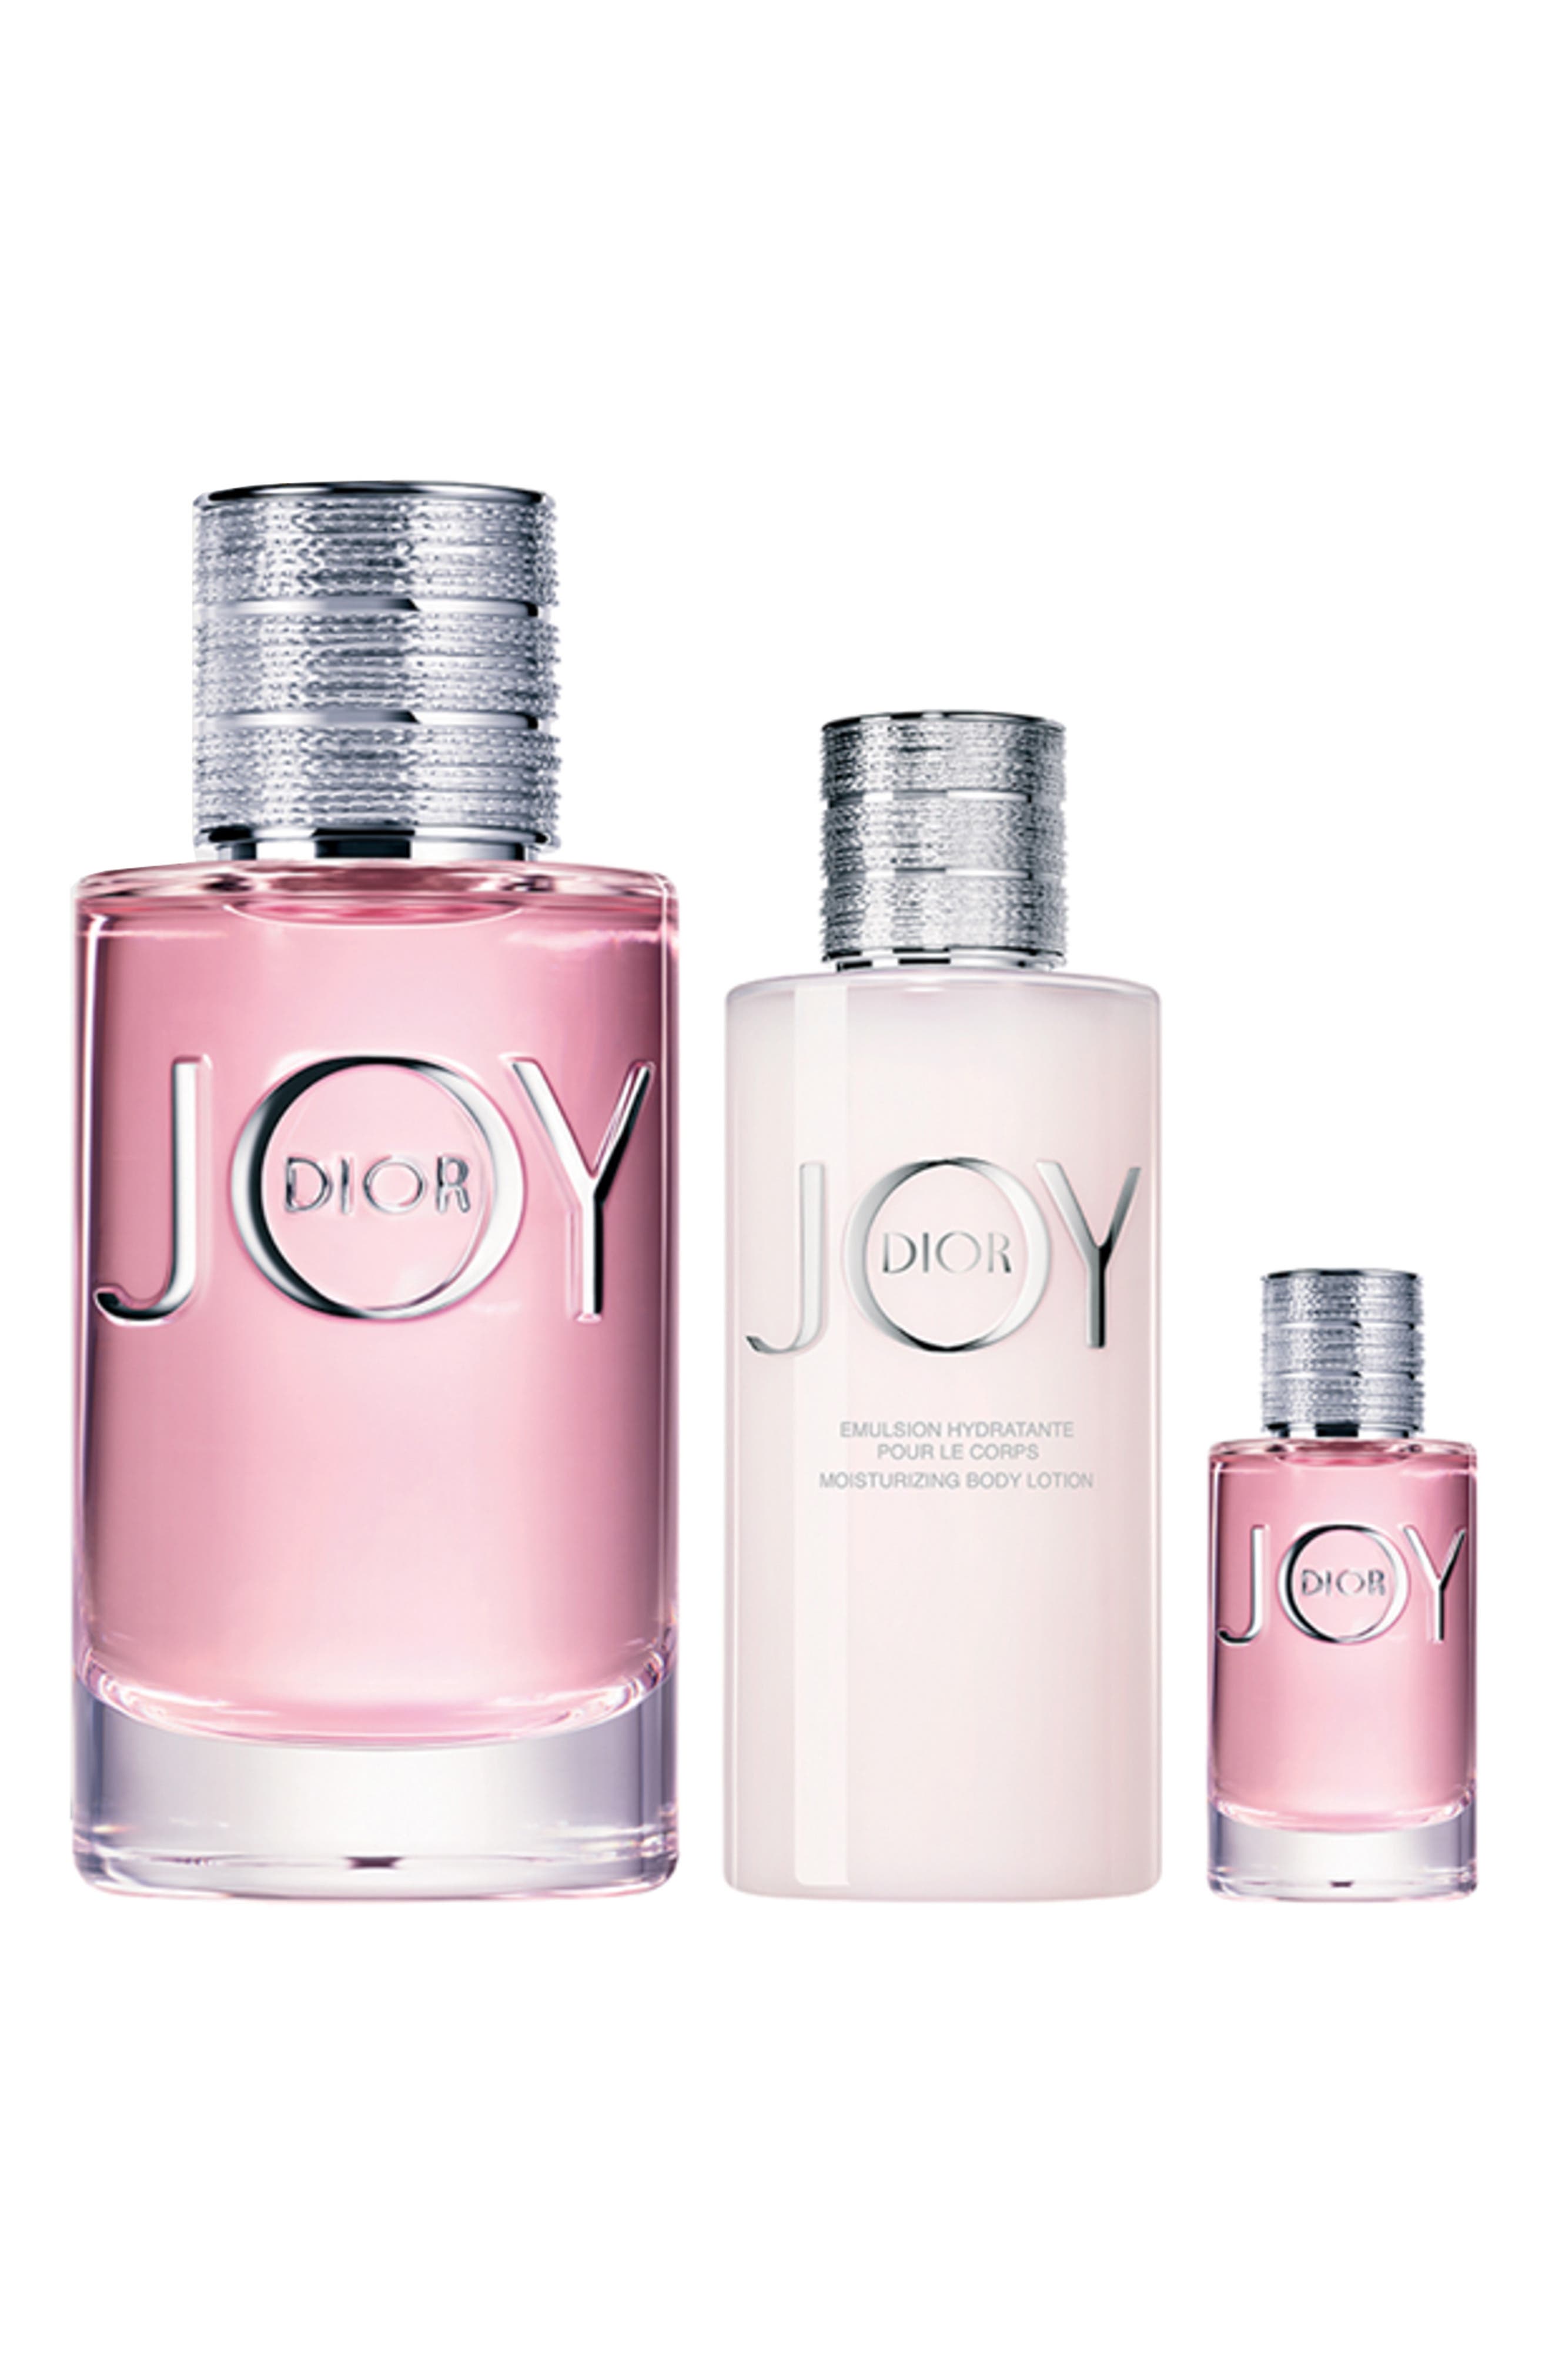 model for joy perfume